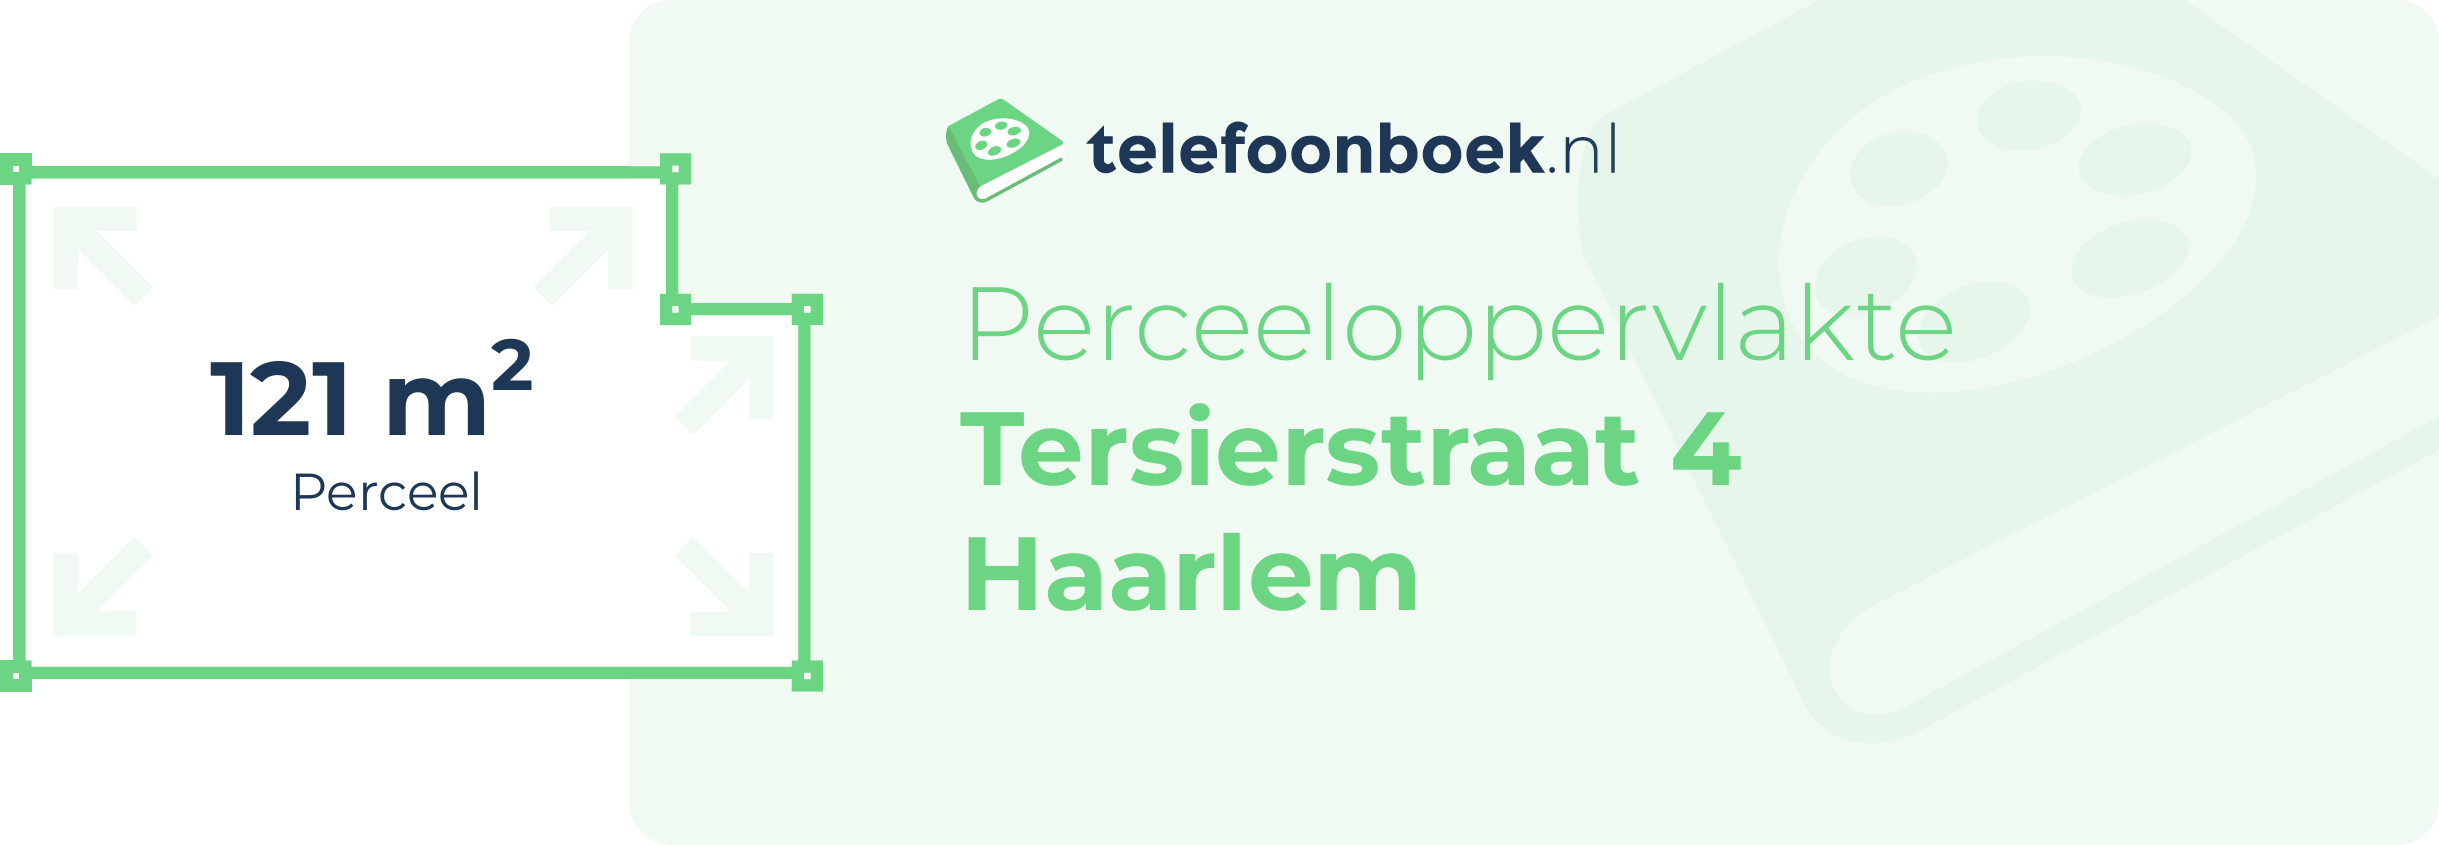 Perceeloppervlakte Tersierstraat 4 Haarlem